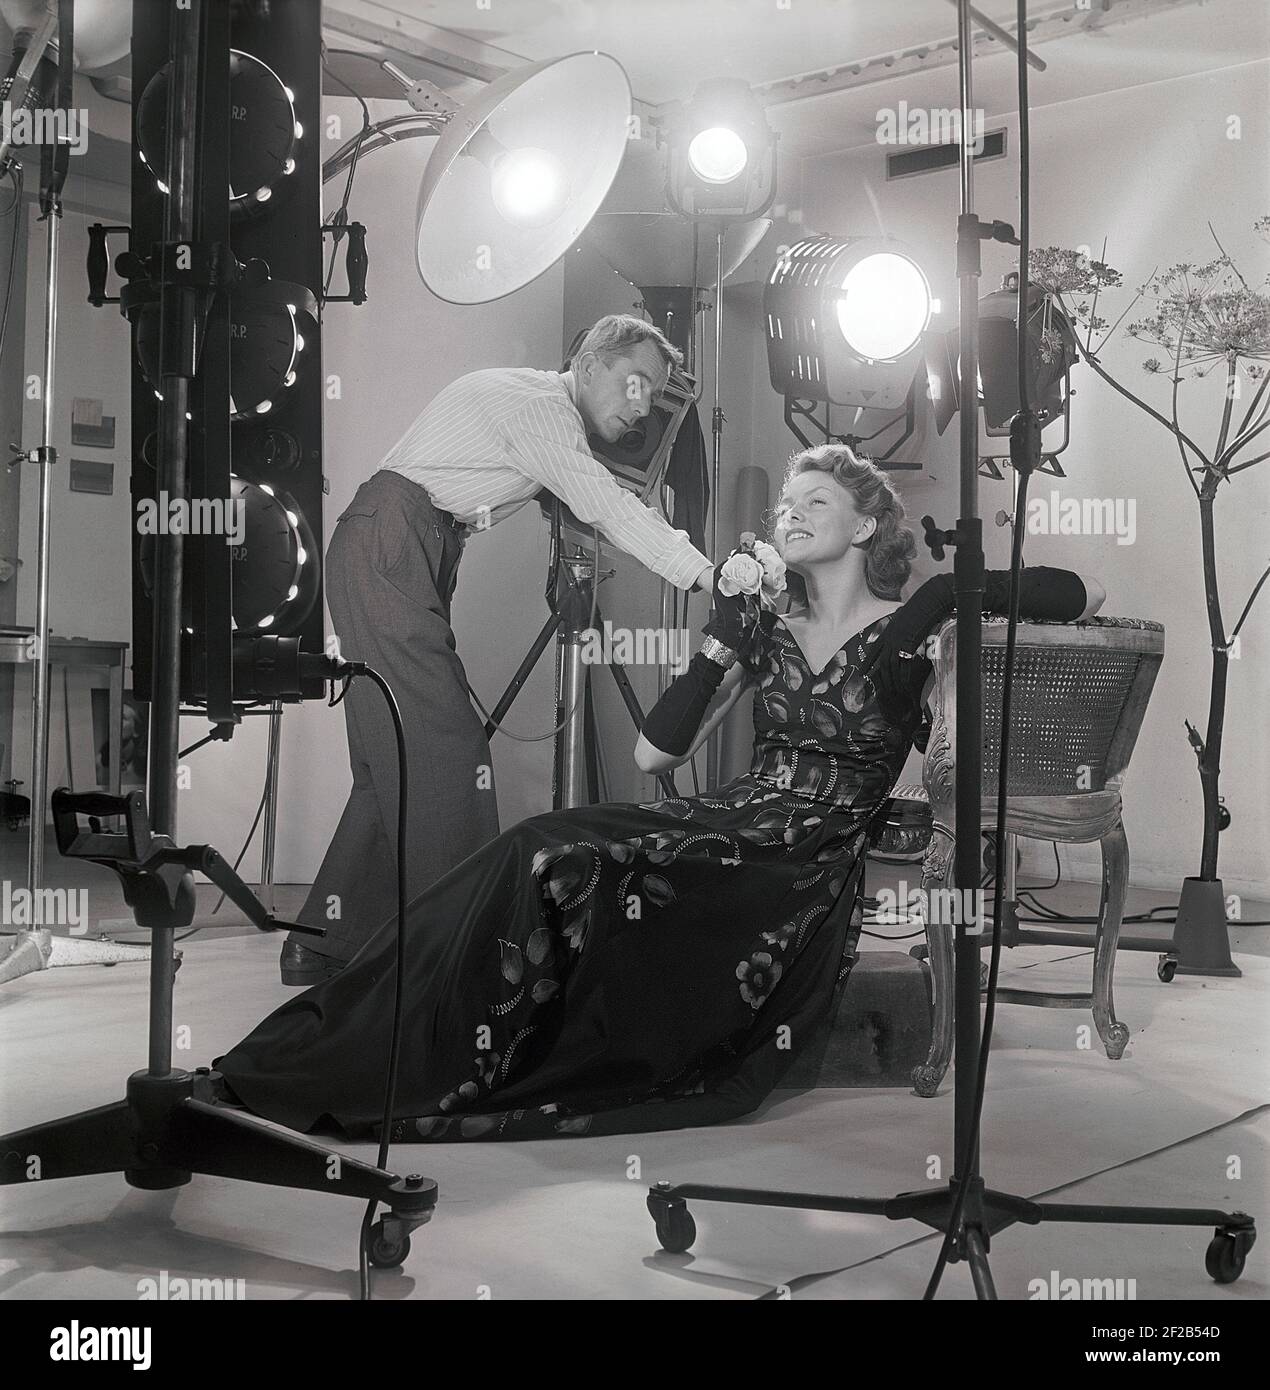 fotografo di moda e modello anni '40. Una giovane donna modello è in uno studio di fotografi che vengono date alcune istruzioni finali prima di scattare le foto. Le spie e la telecamera sono visibili. Svezia 1949 rif AT7-8 Foto Stock